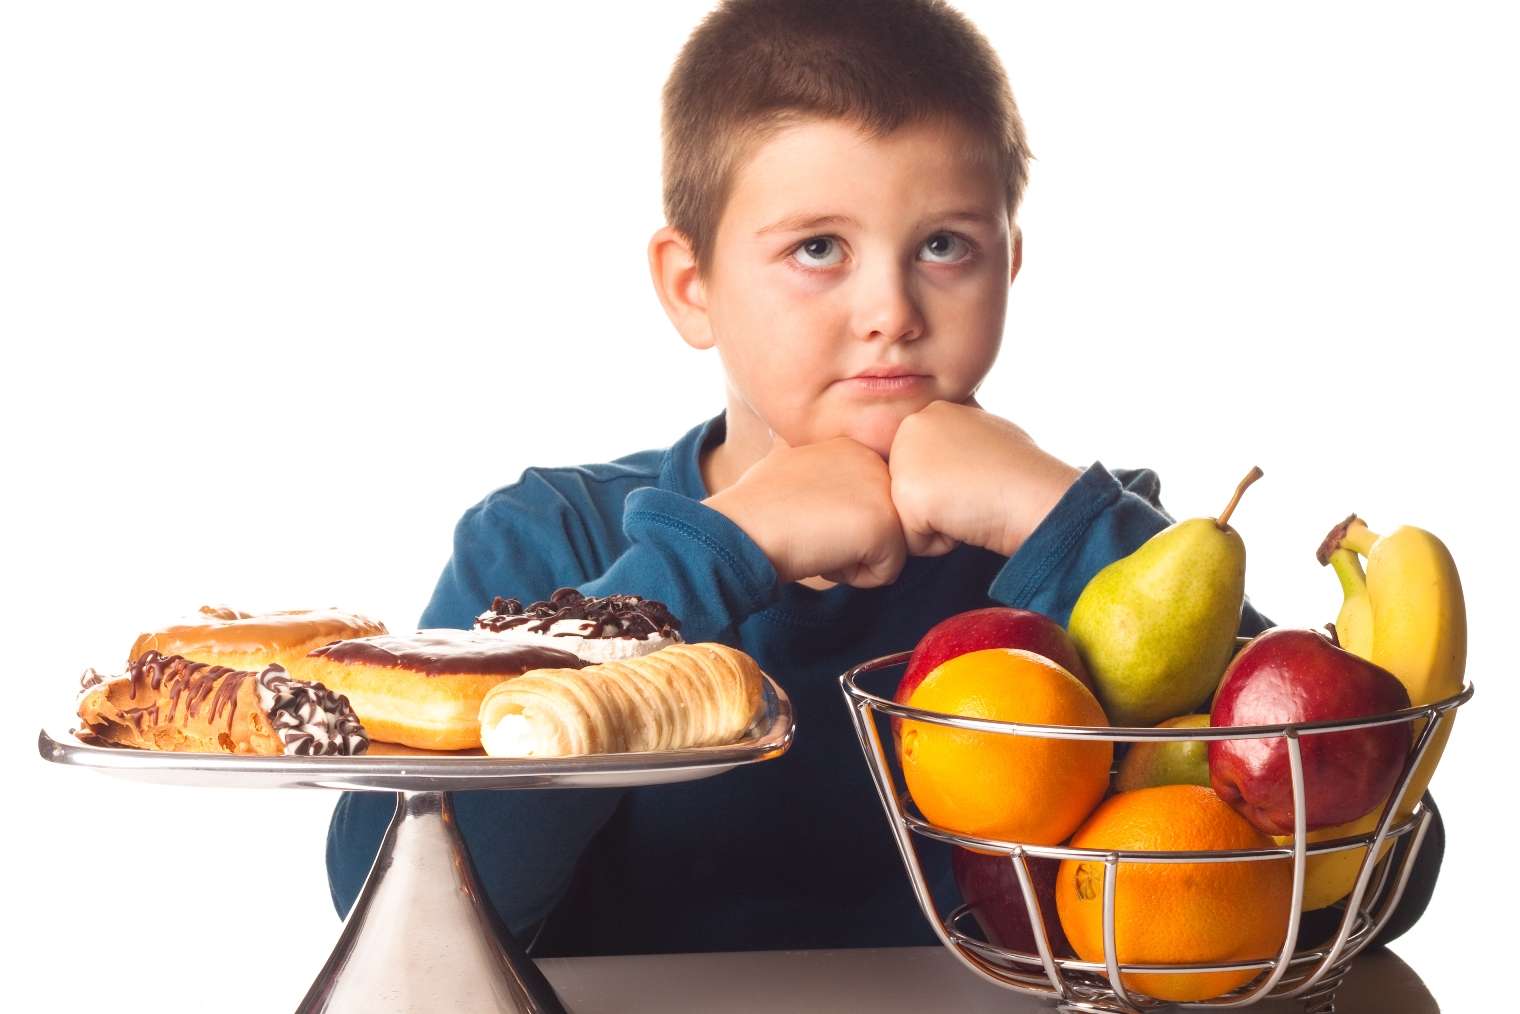 تقليل الوزن للأطفال بـ5 أطعمة ومشروبات مفيدة وصحية